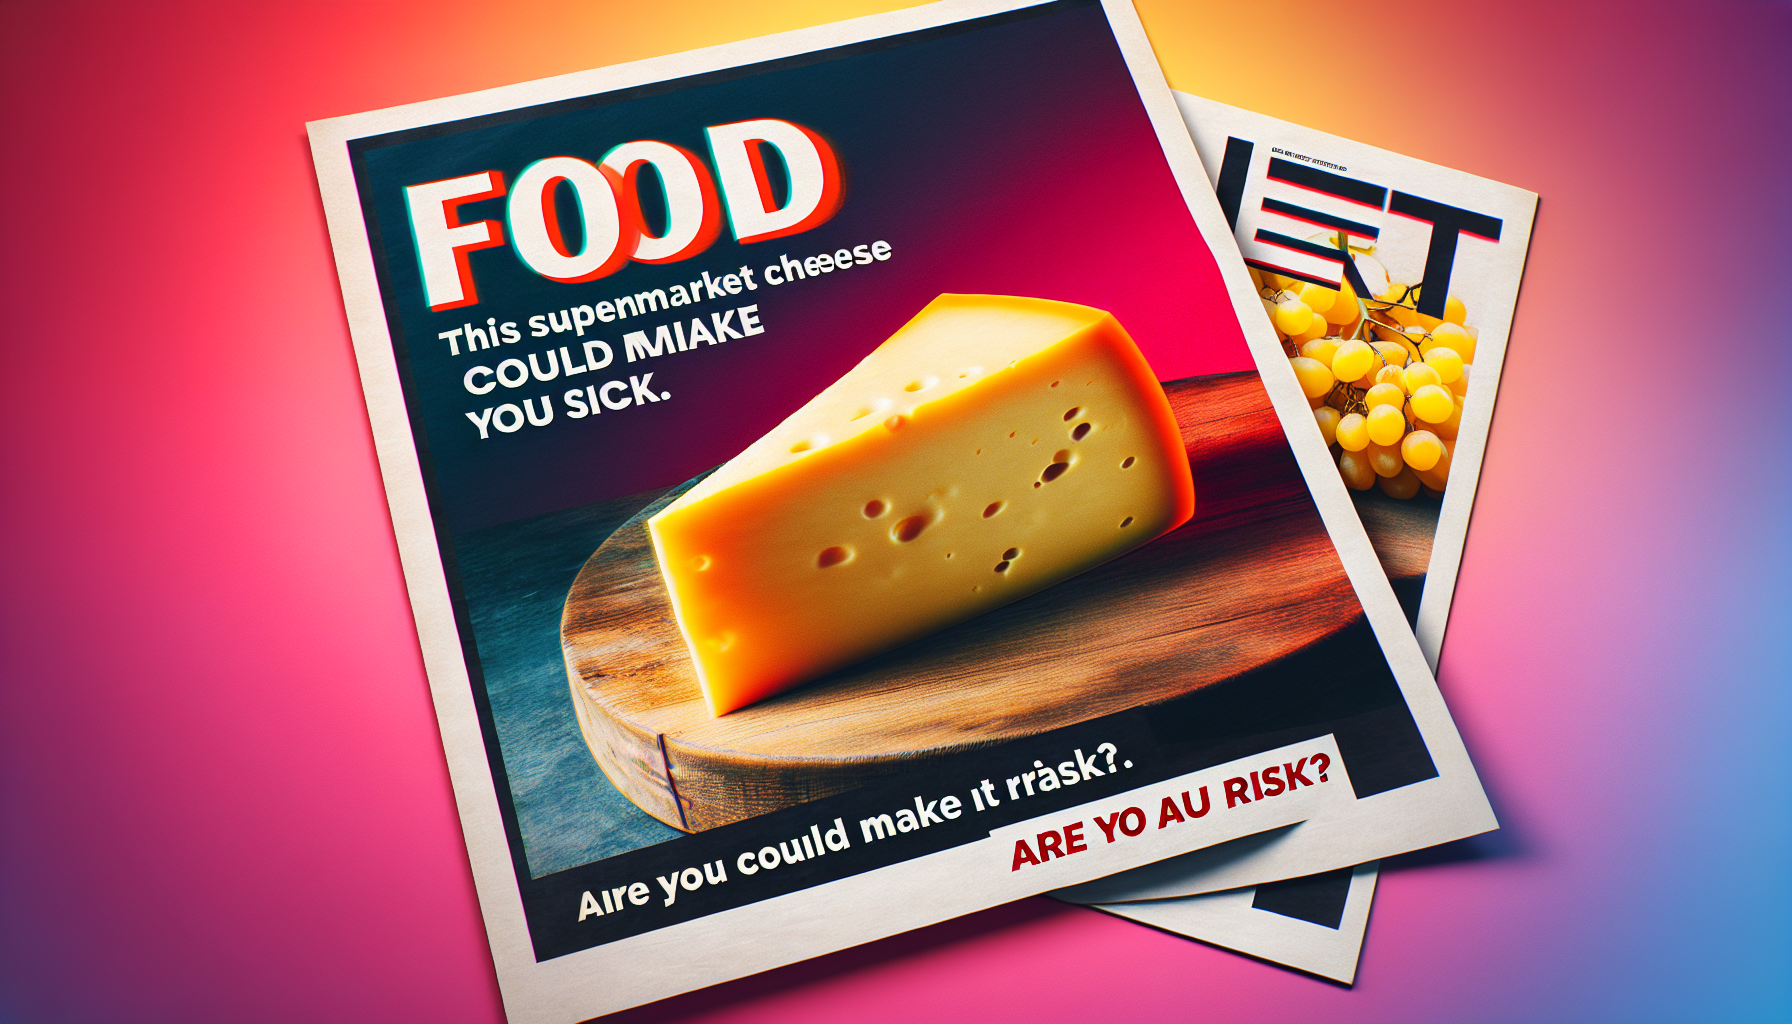 découvrez l'alerte alimentaire sur ce fromage de chez carrefour susceptible de causer des problèmes de santé. vérifiez si vous êtes concerné.